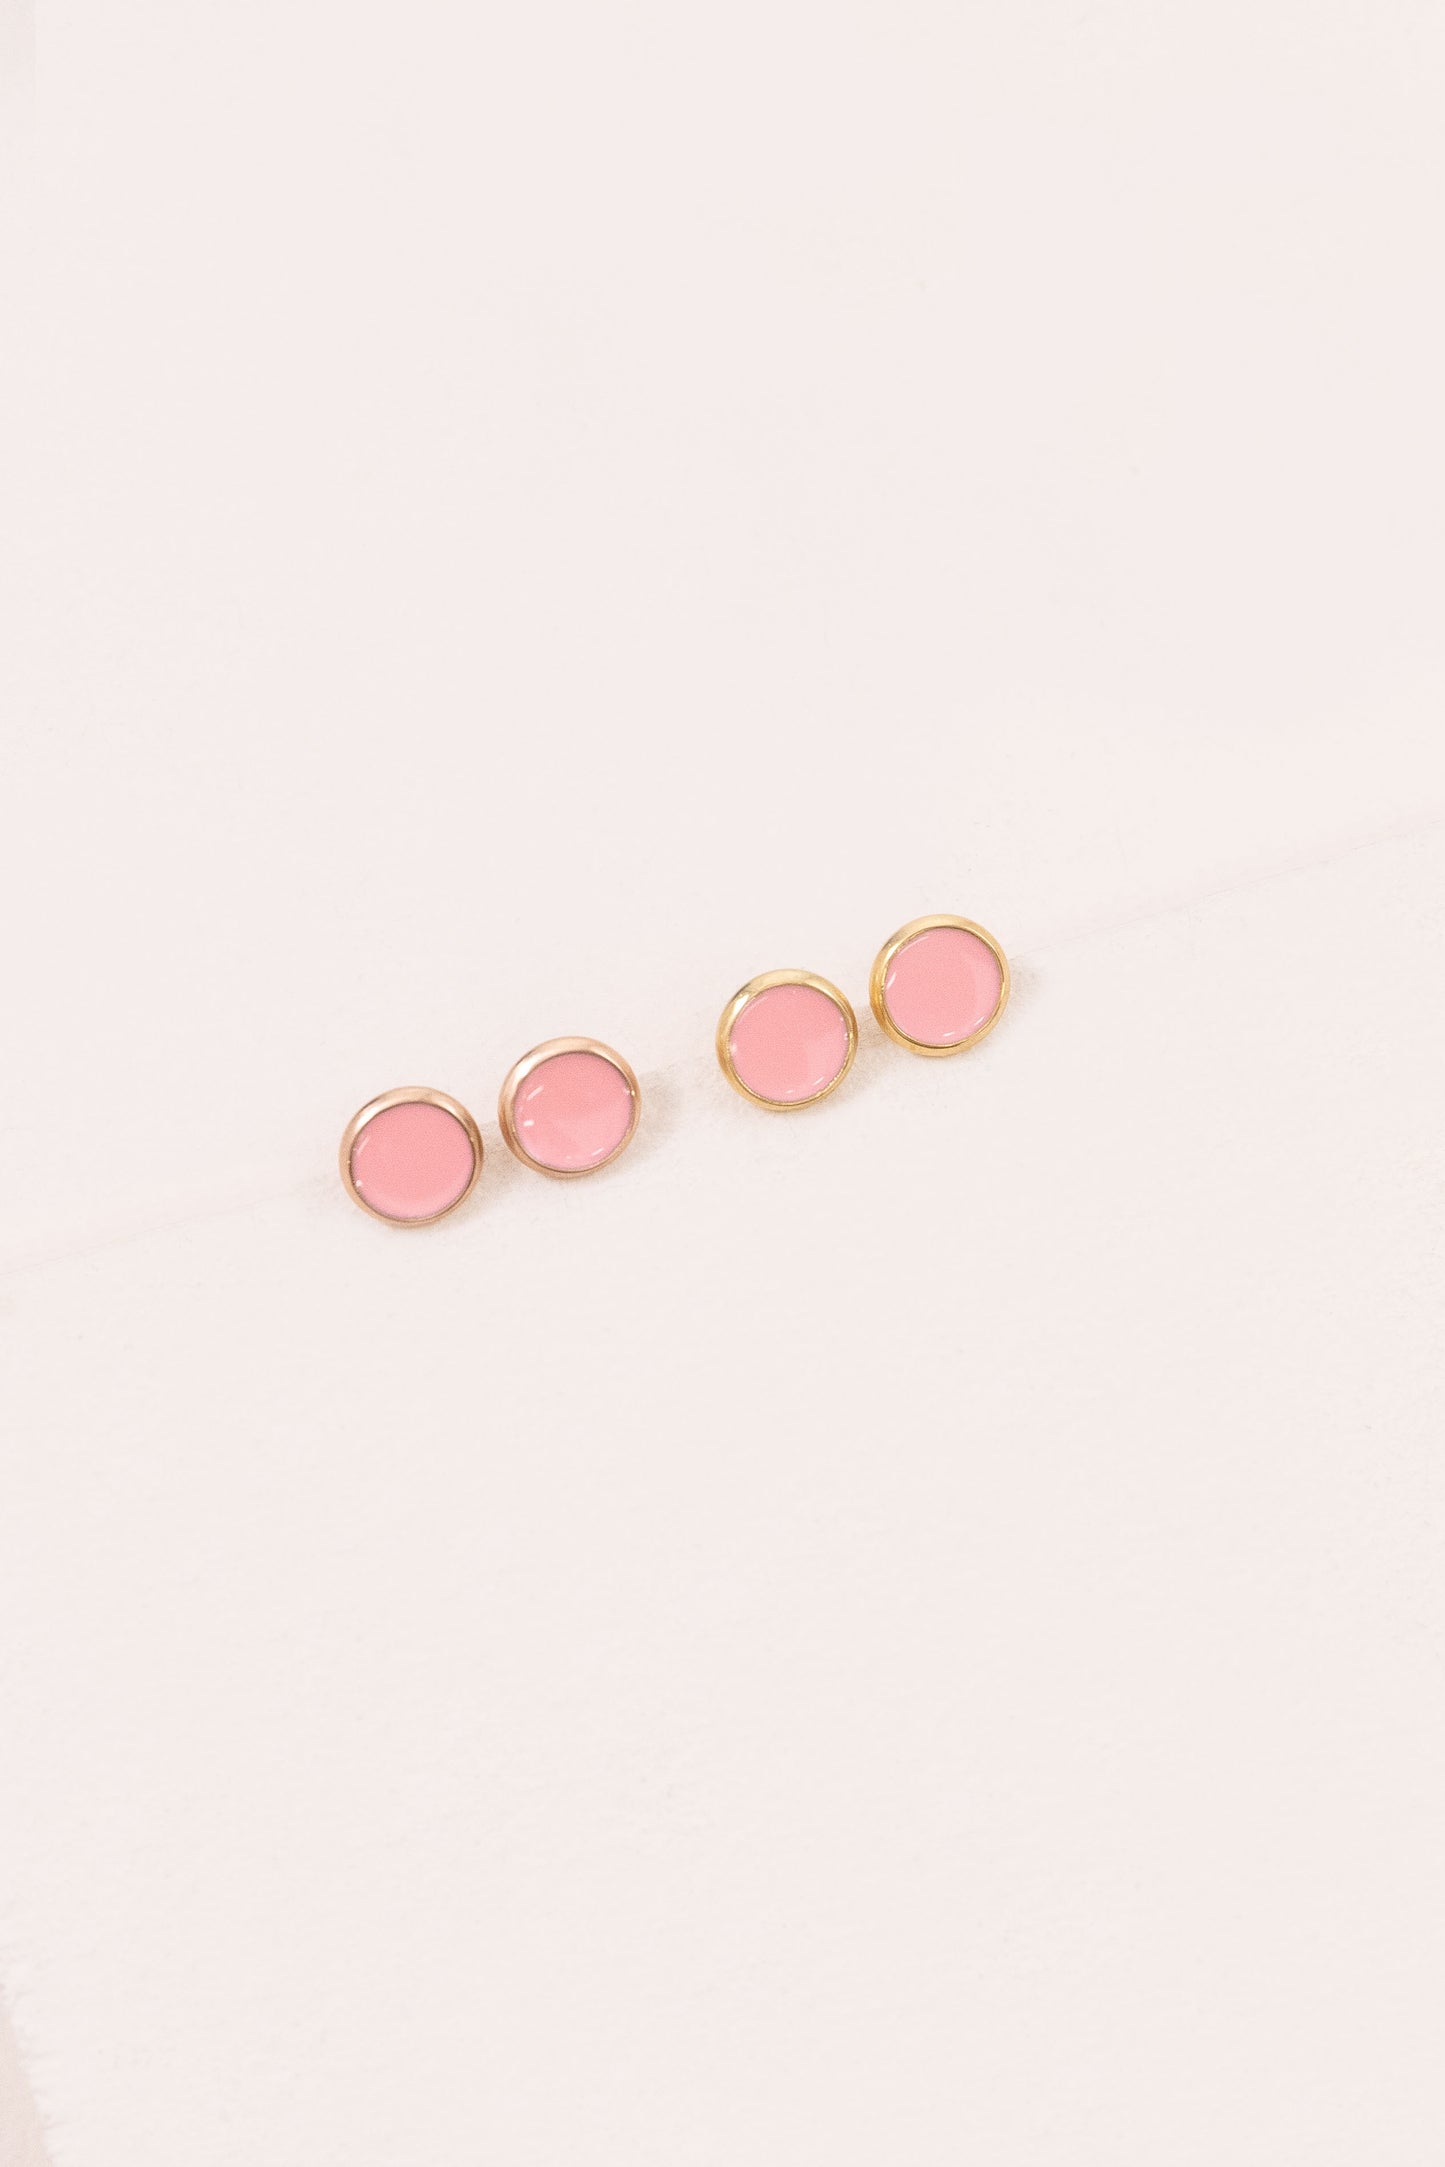 10mm Palette Earrings | Bubble Gum Pink (14K)